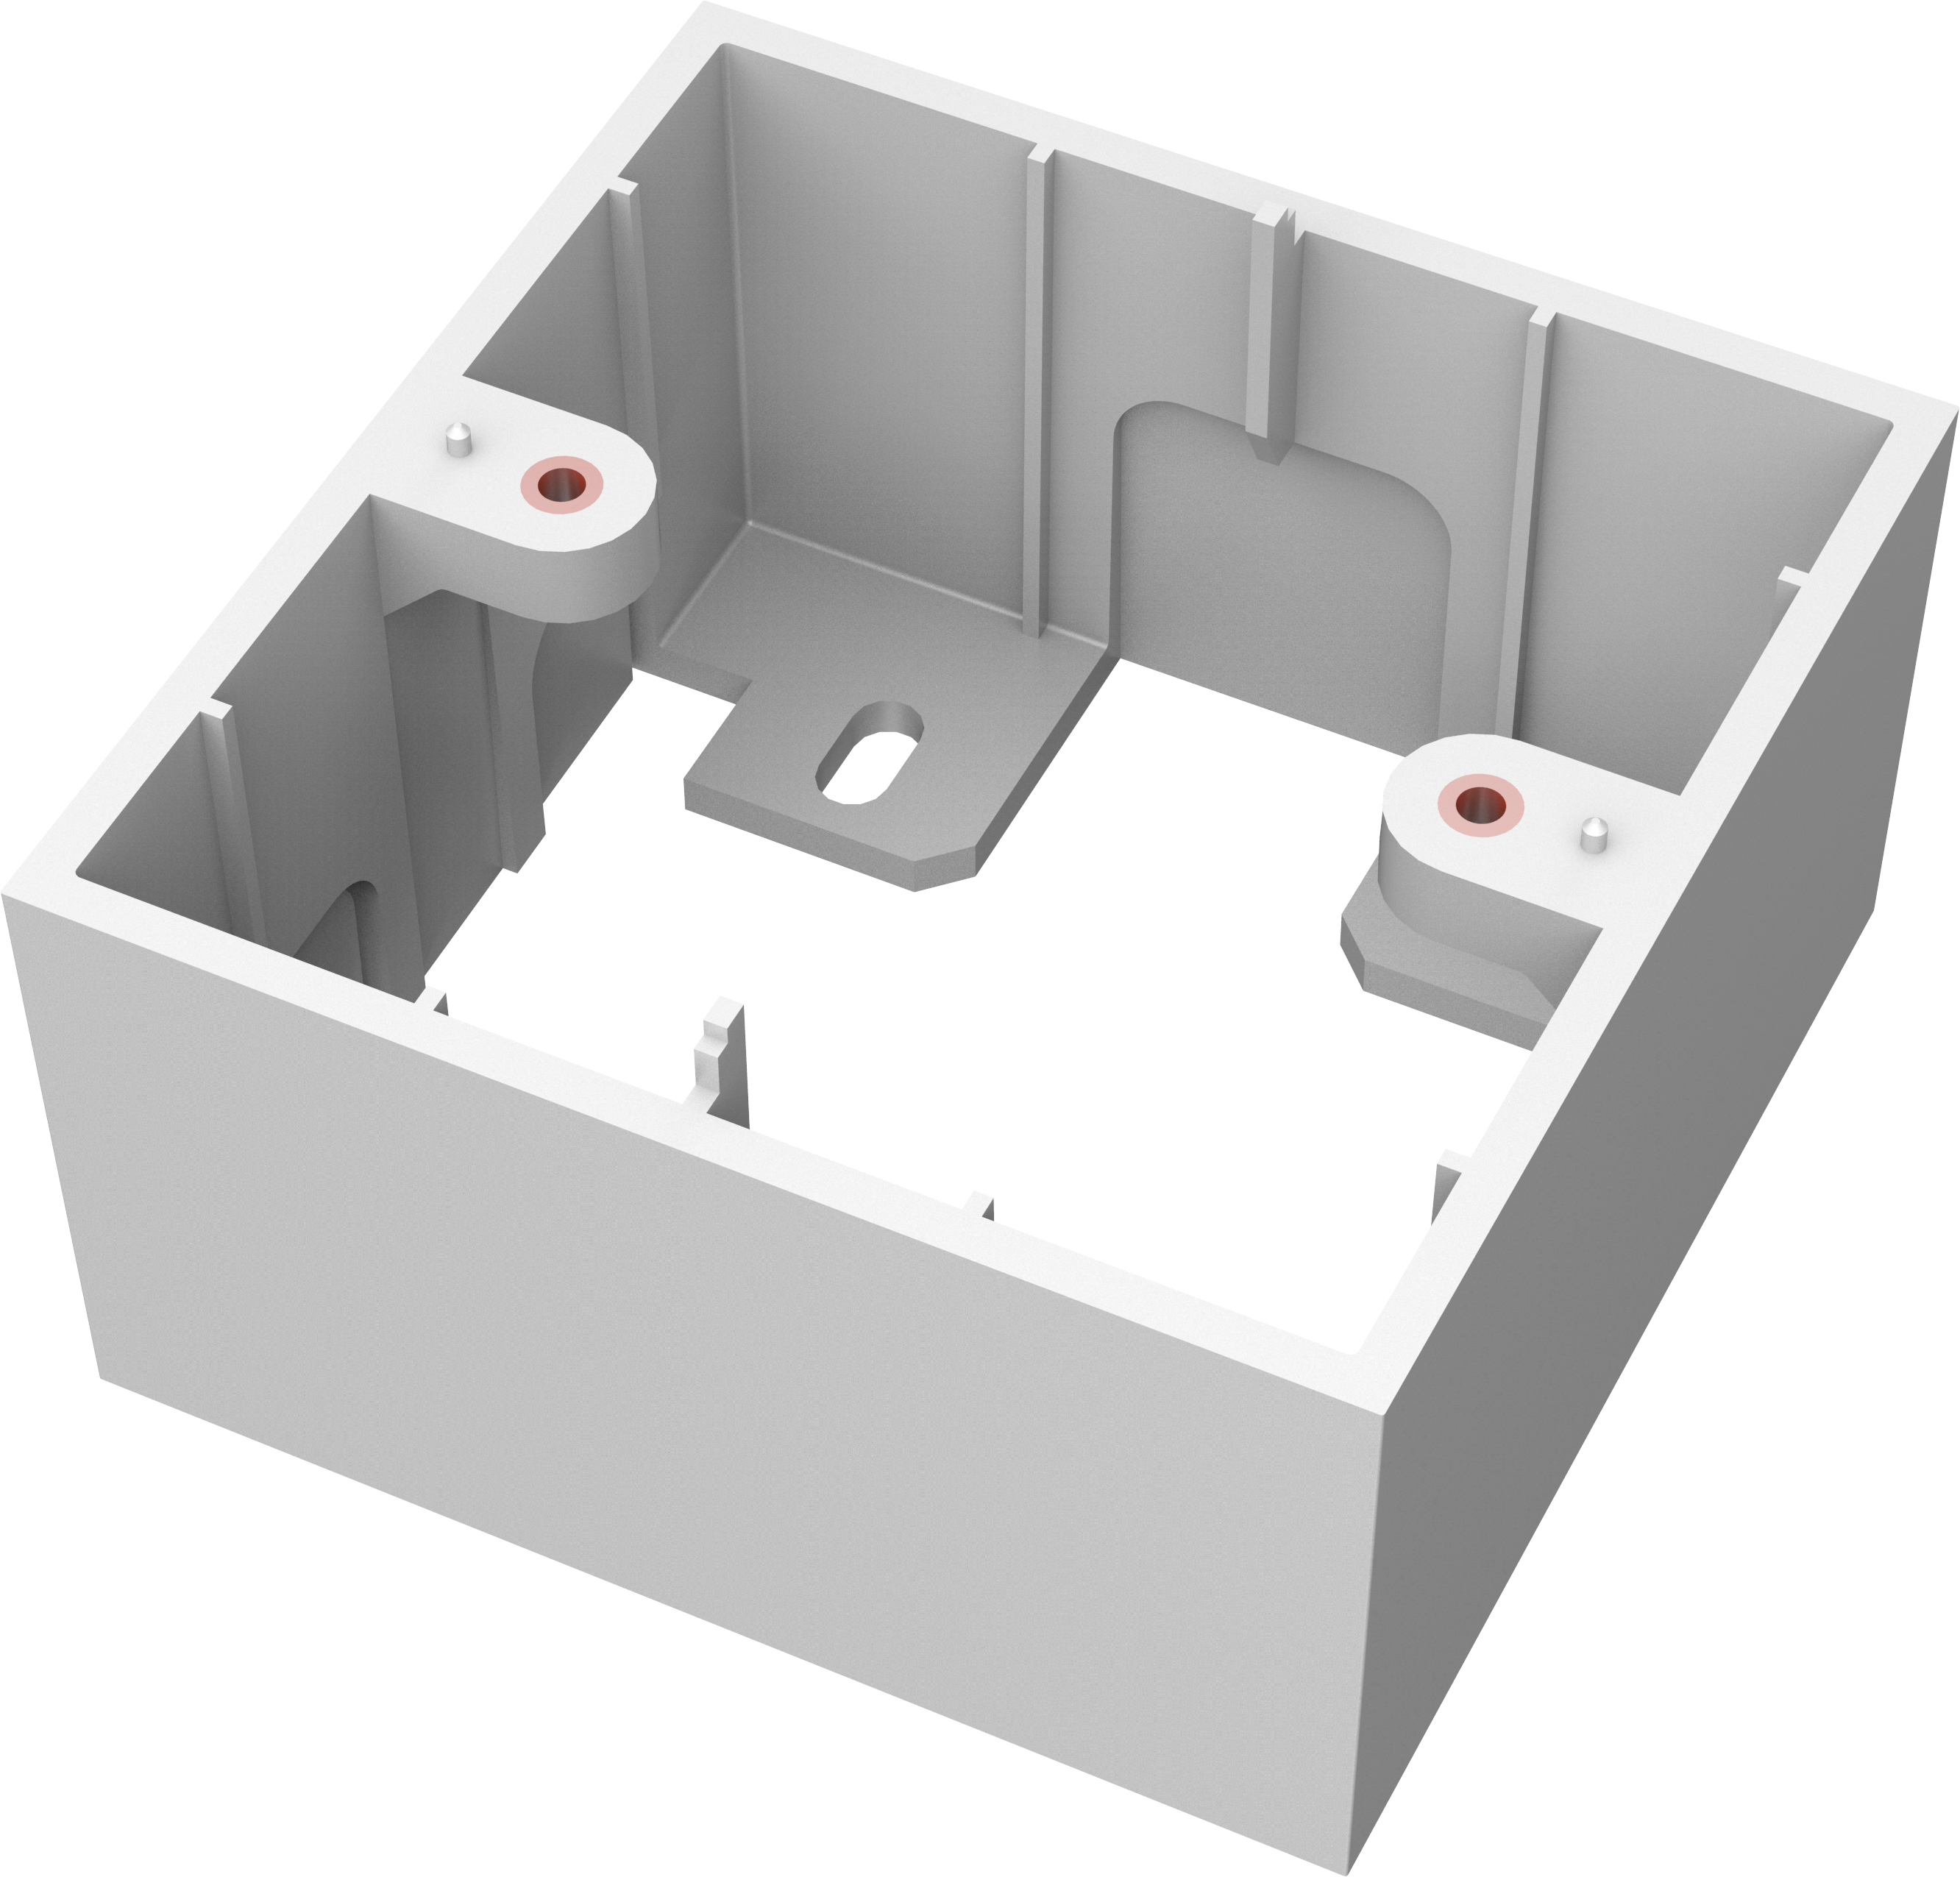 An image showing TC3 Caja de montaje en superficie y con una salida para RU